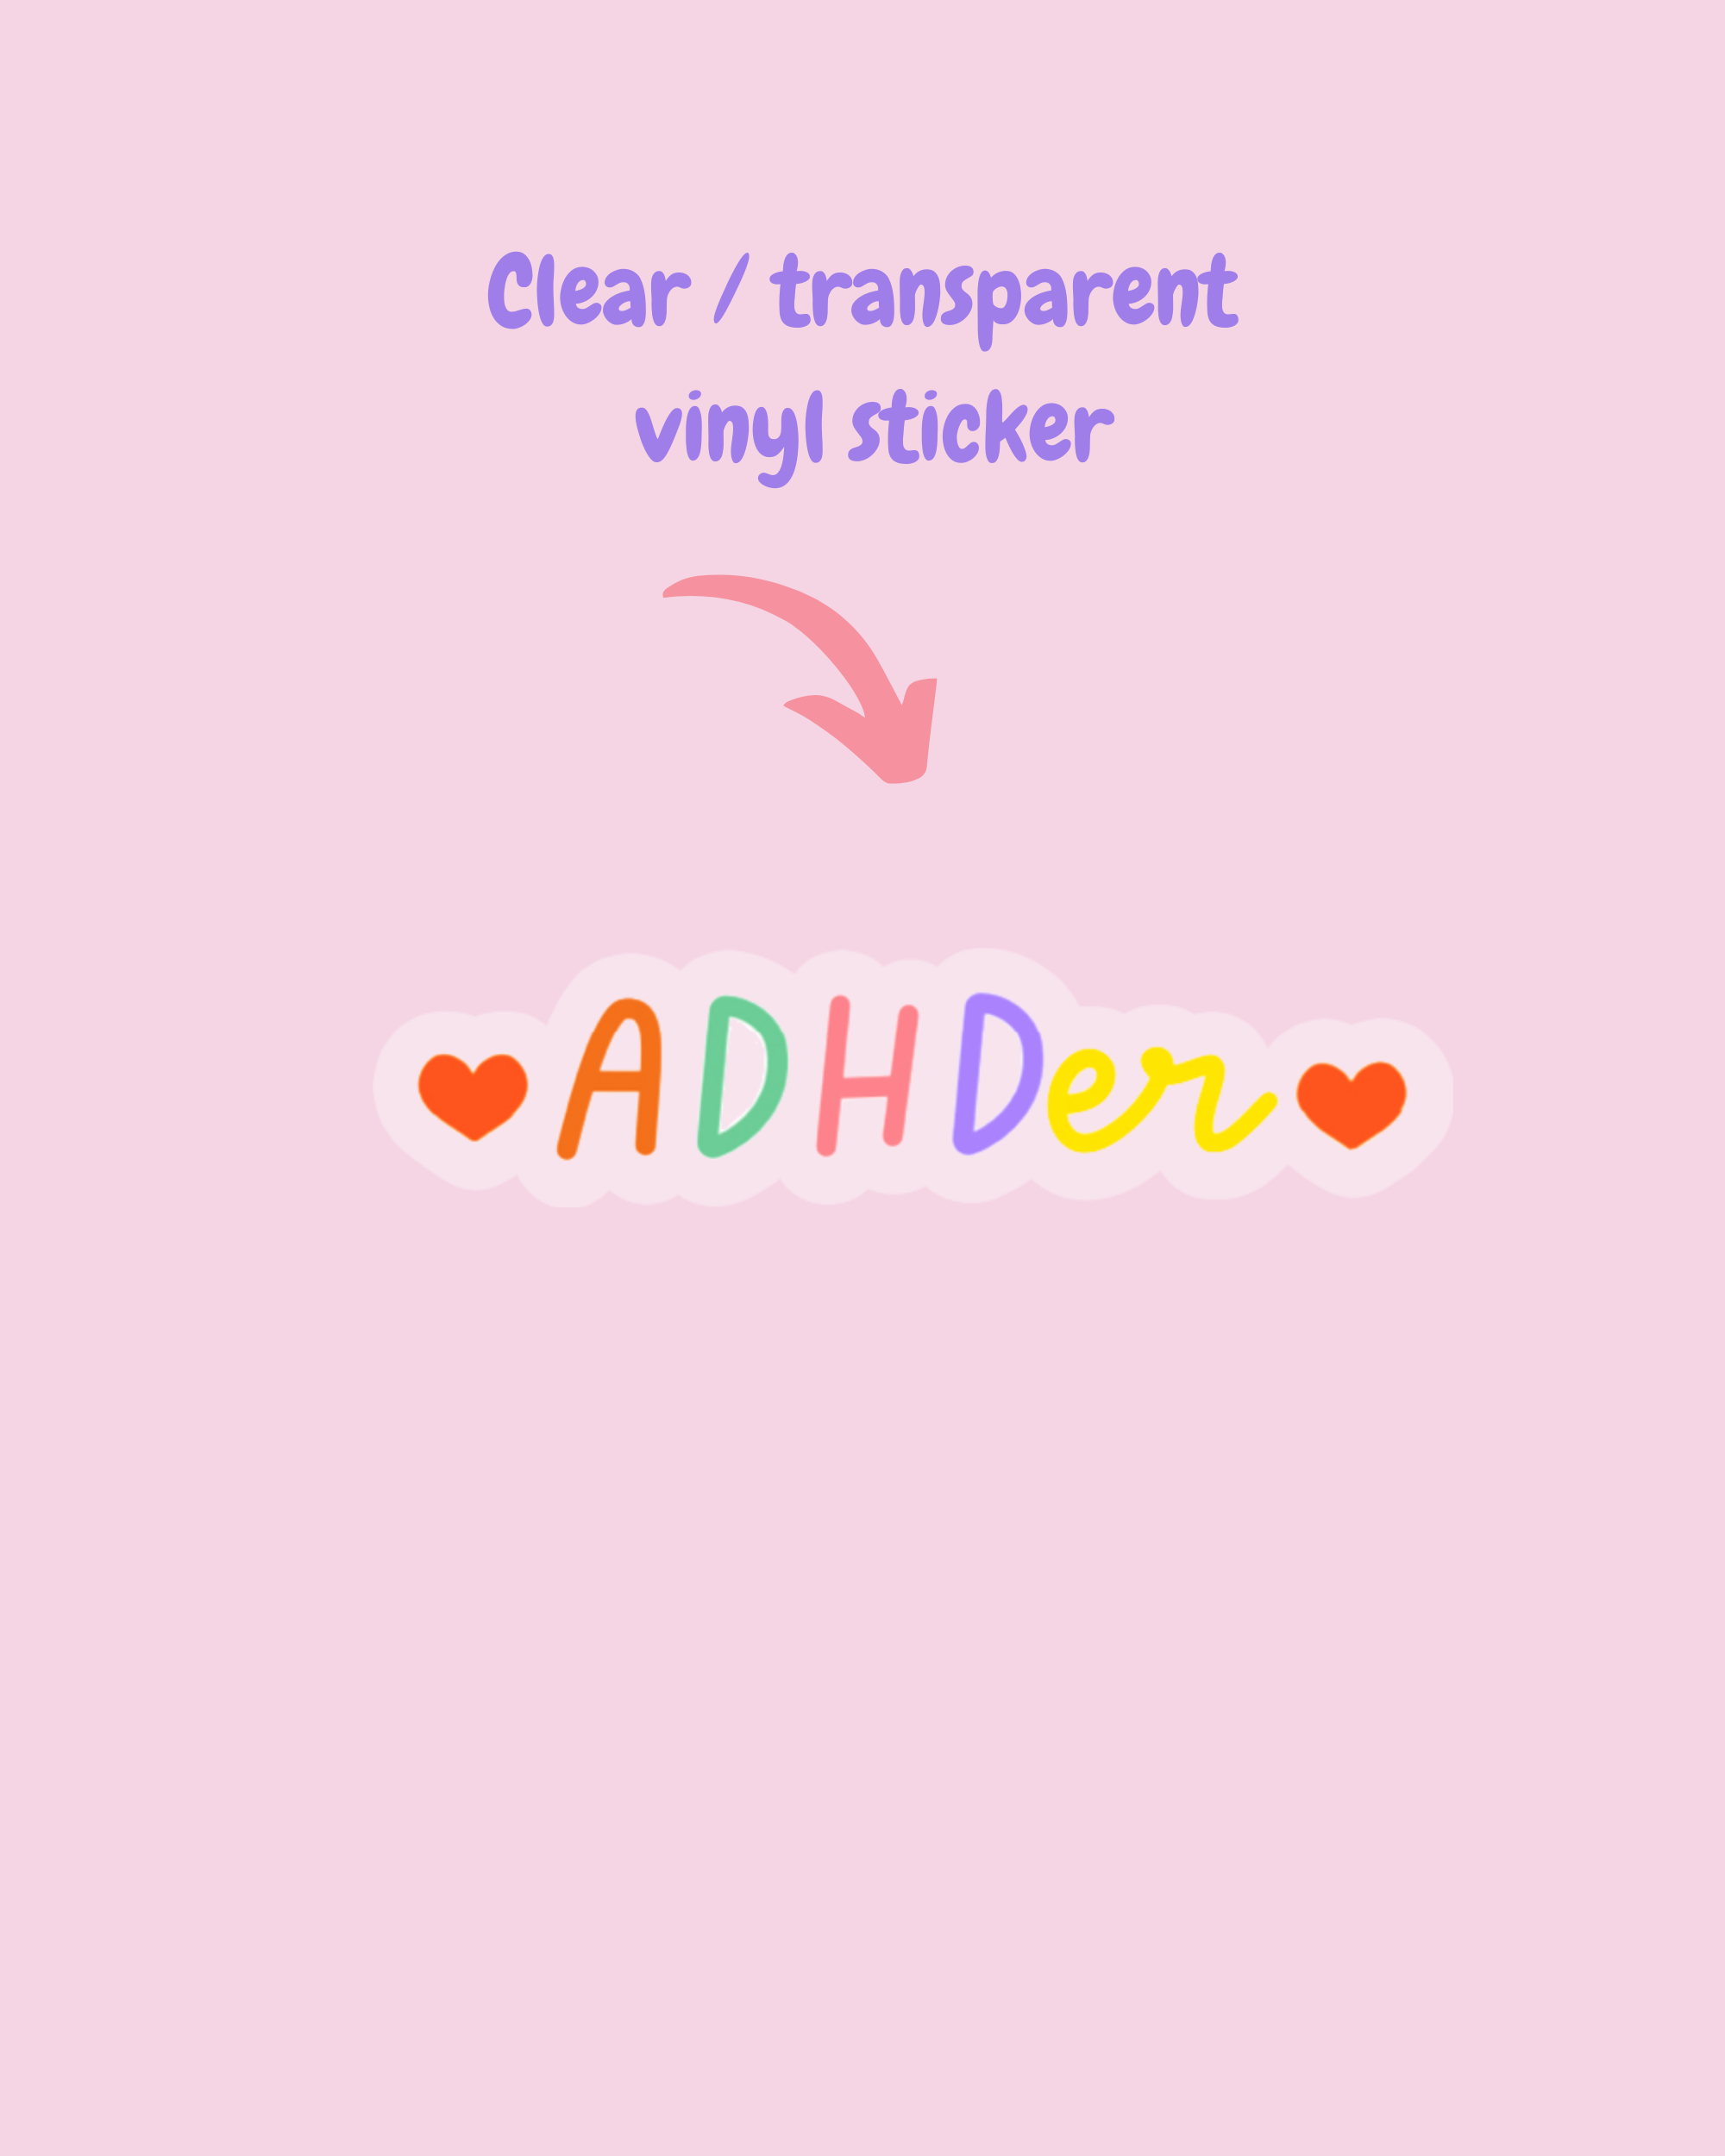 The ADHDer sticker.